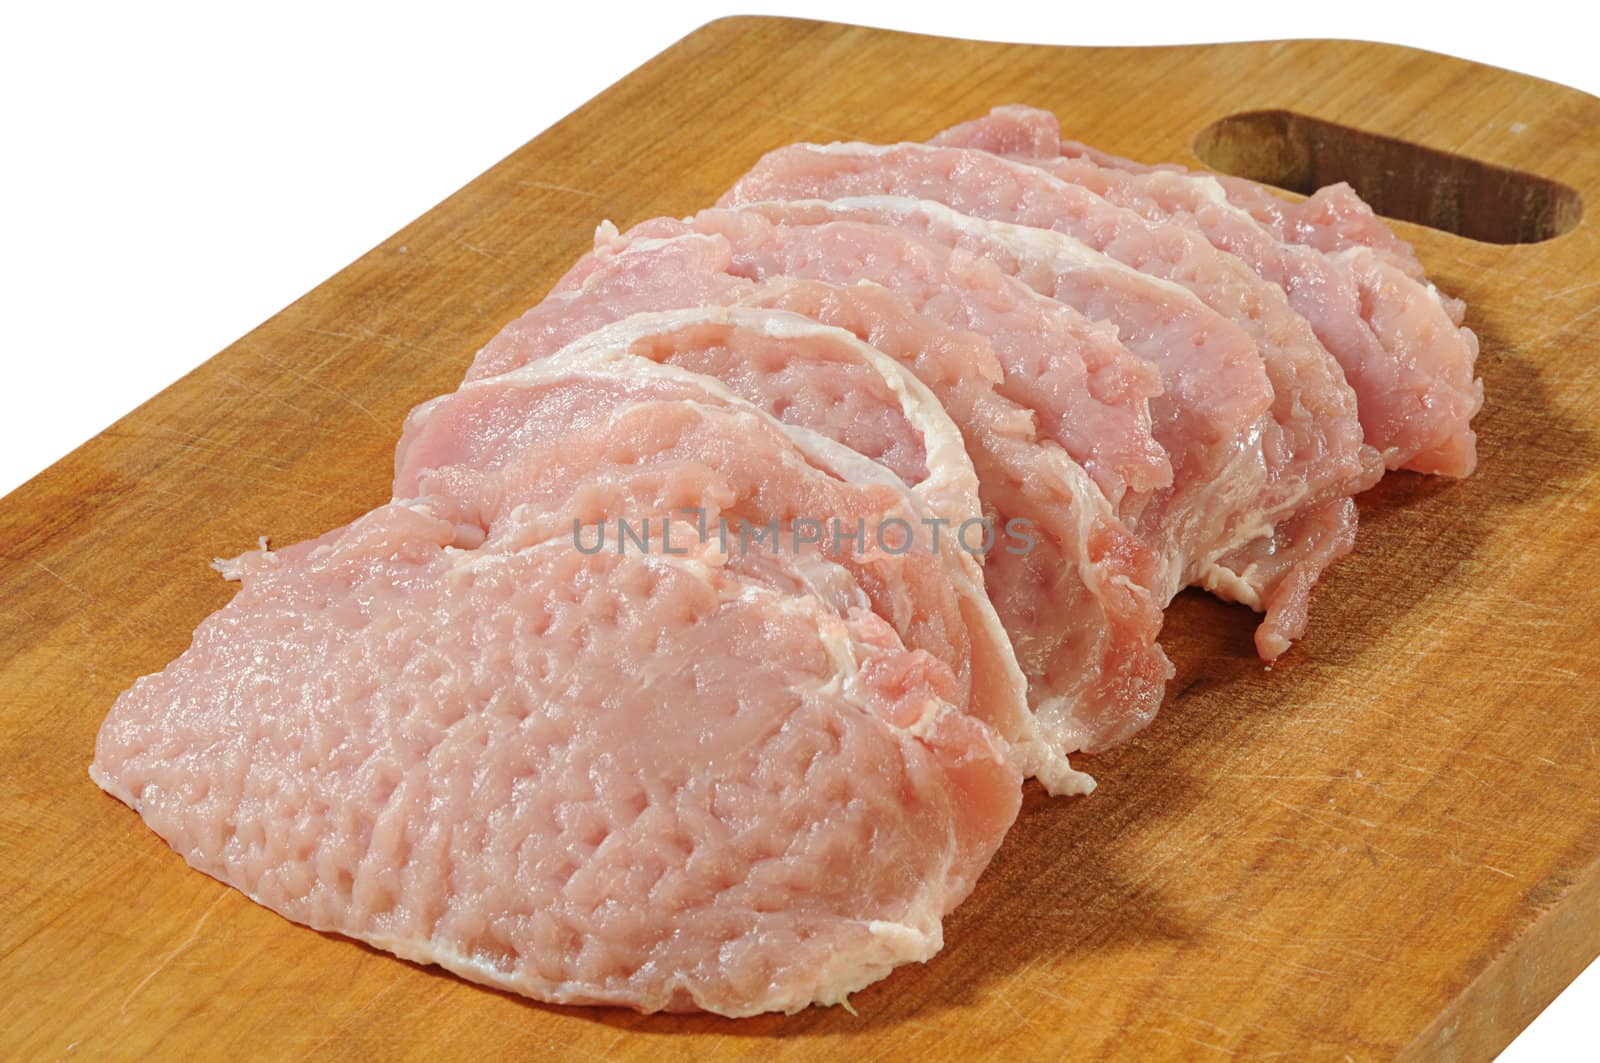 raw undercut of pork by dyoma